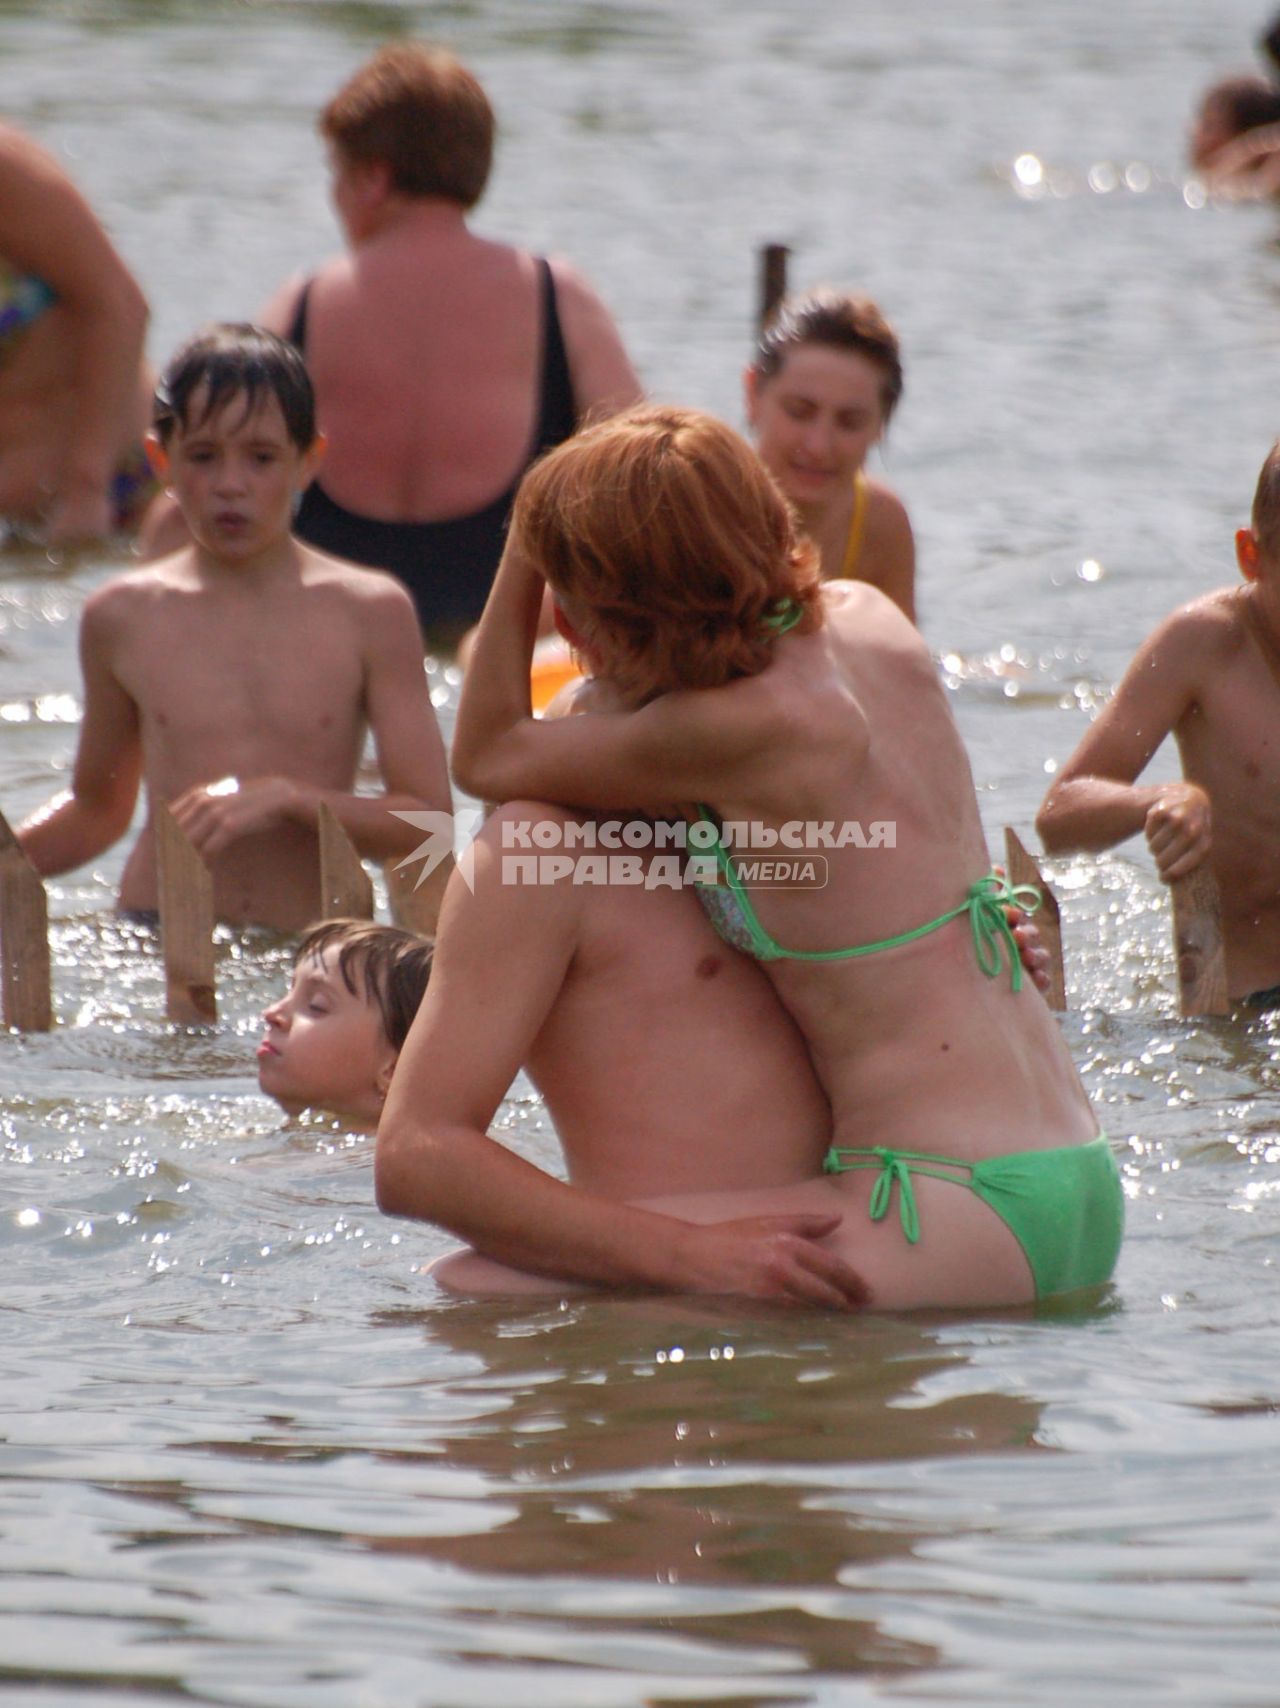 Молодая пара обнявшись стоит в воде.